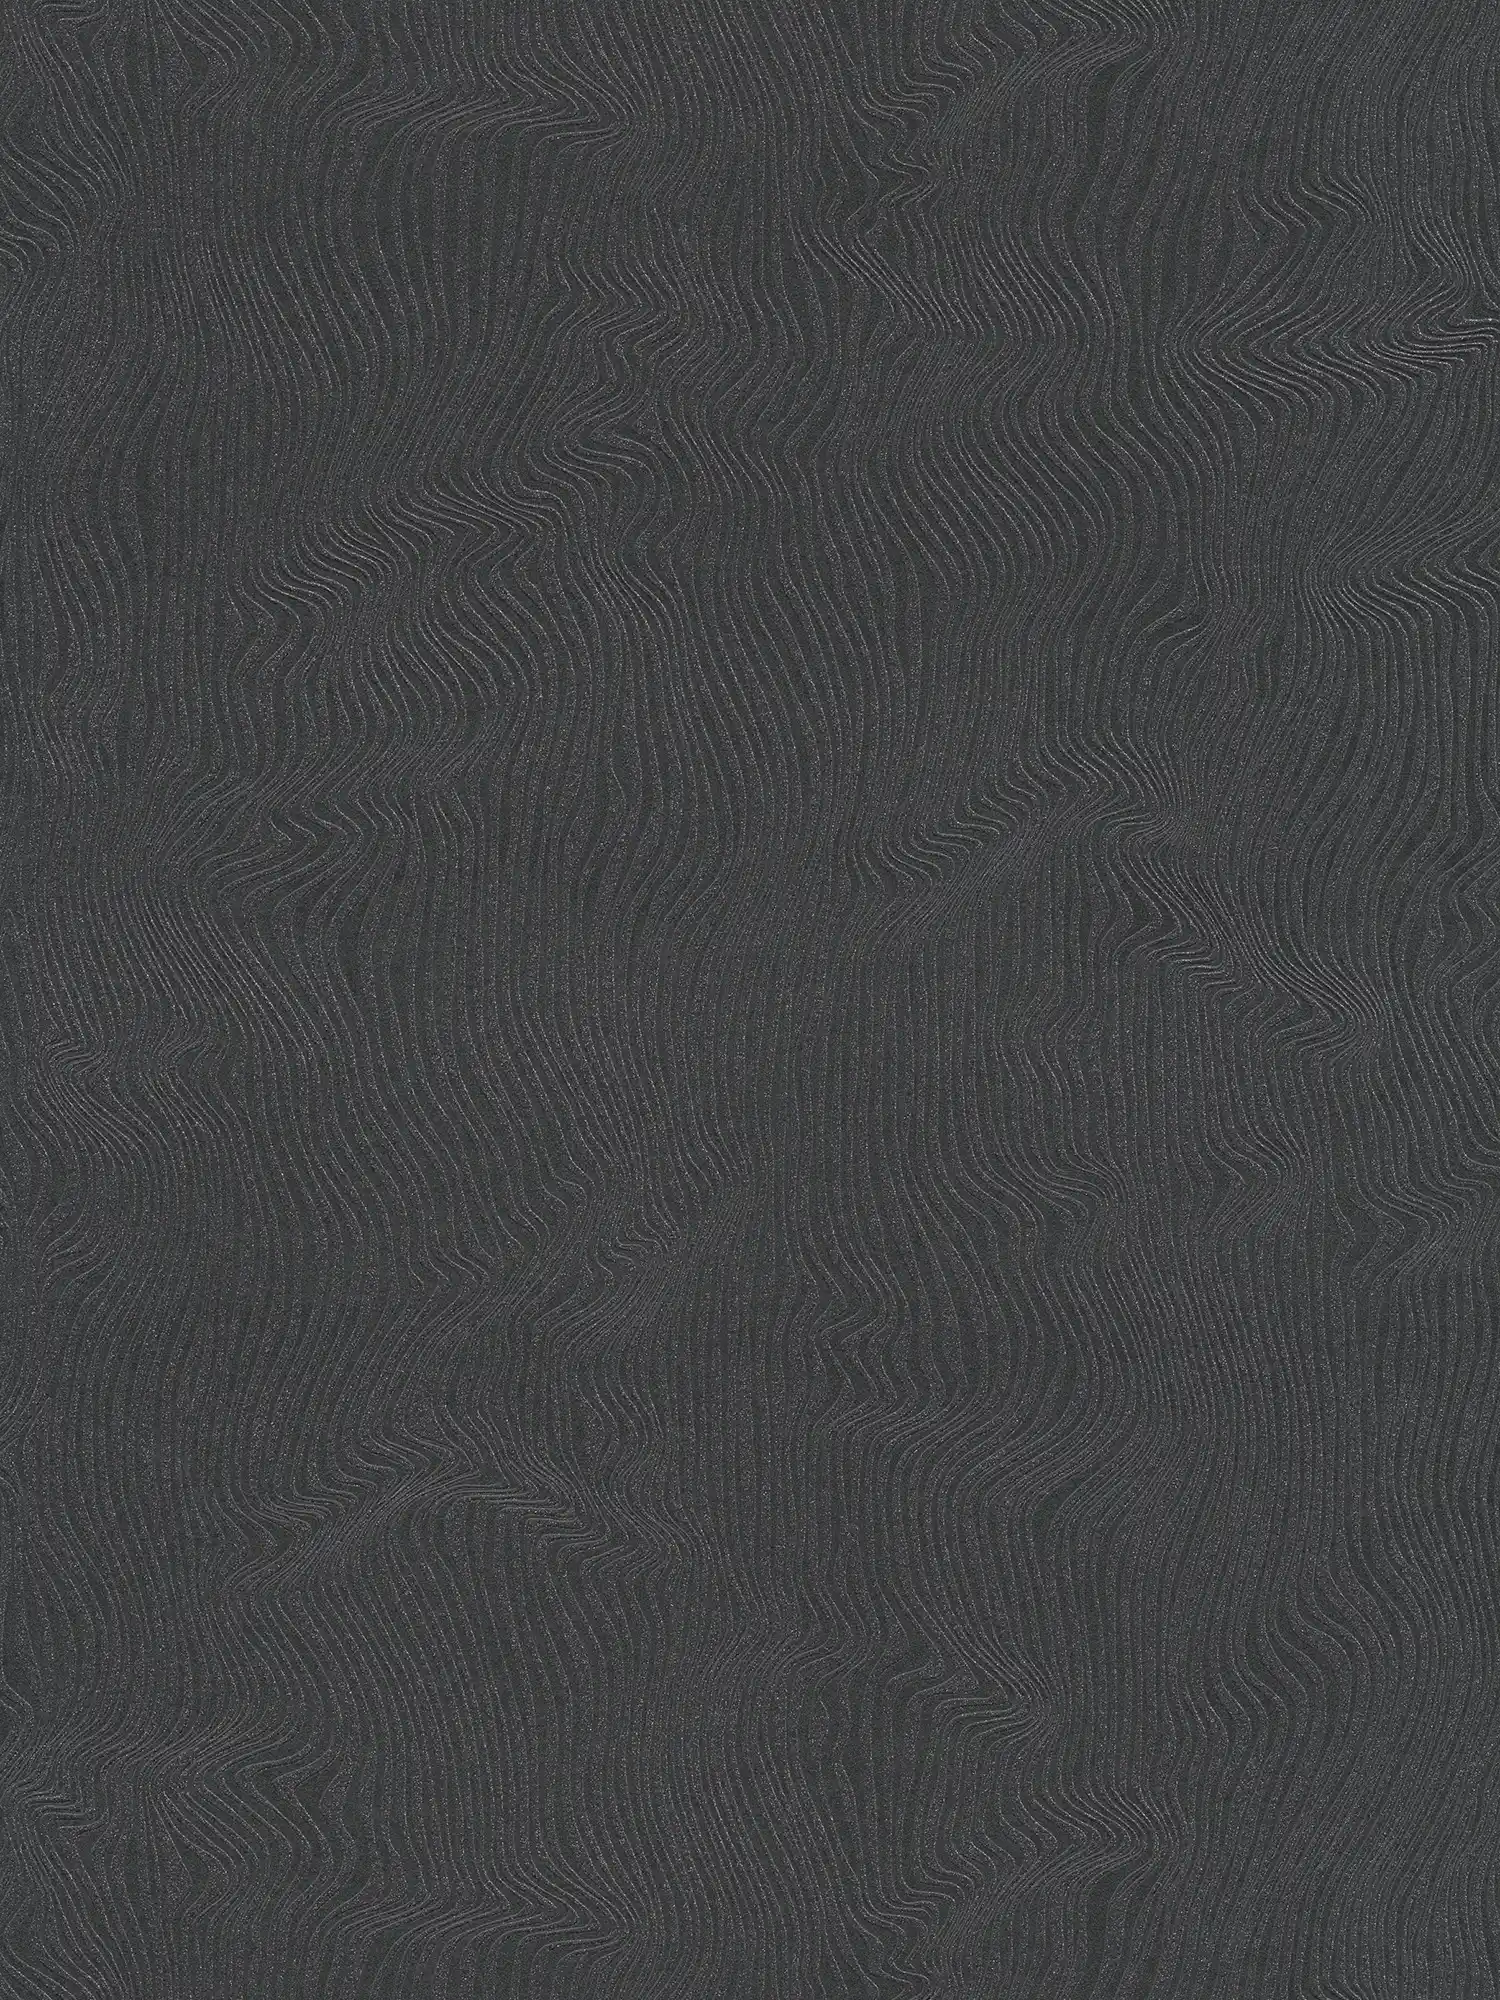 Papel pintado liso con diseño de líneas en movimiento - negro
